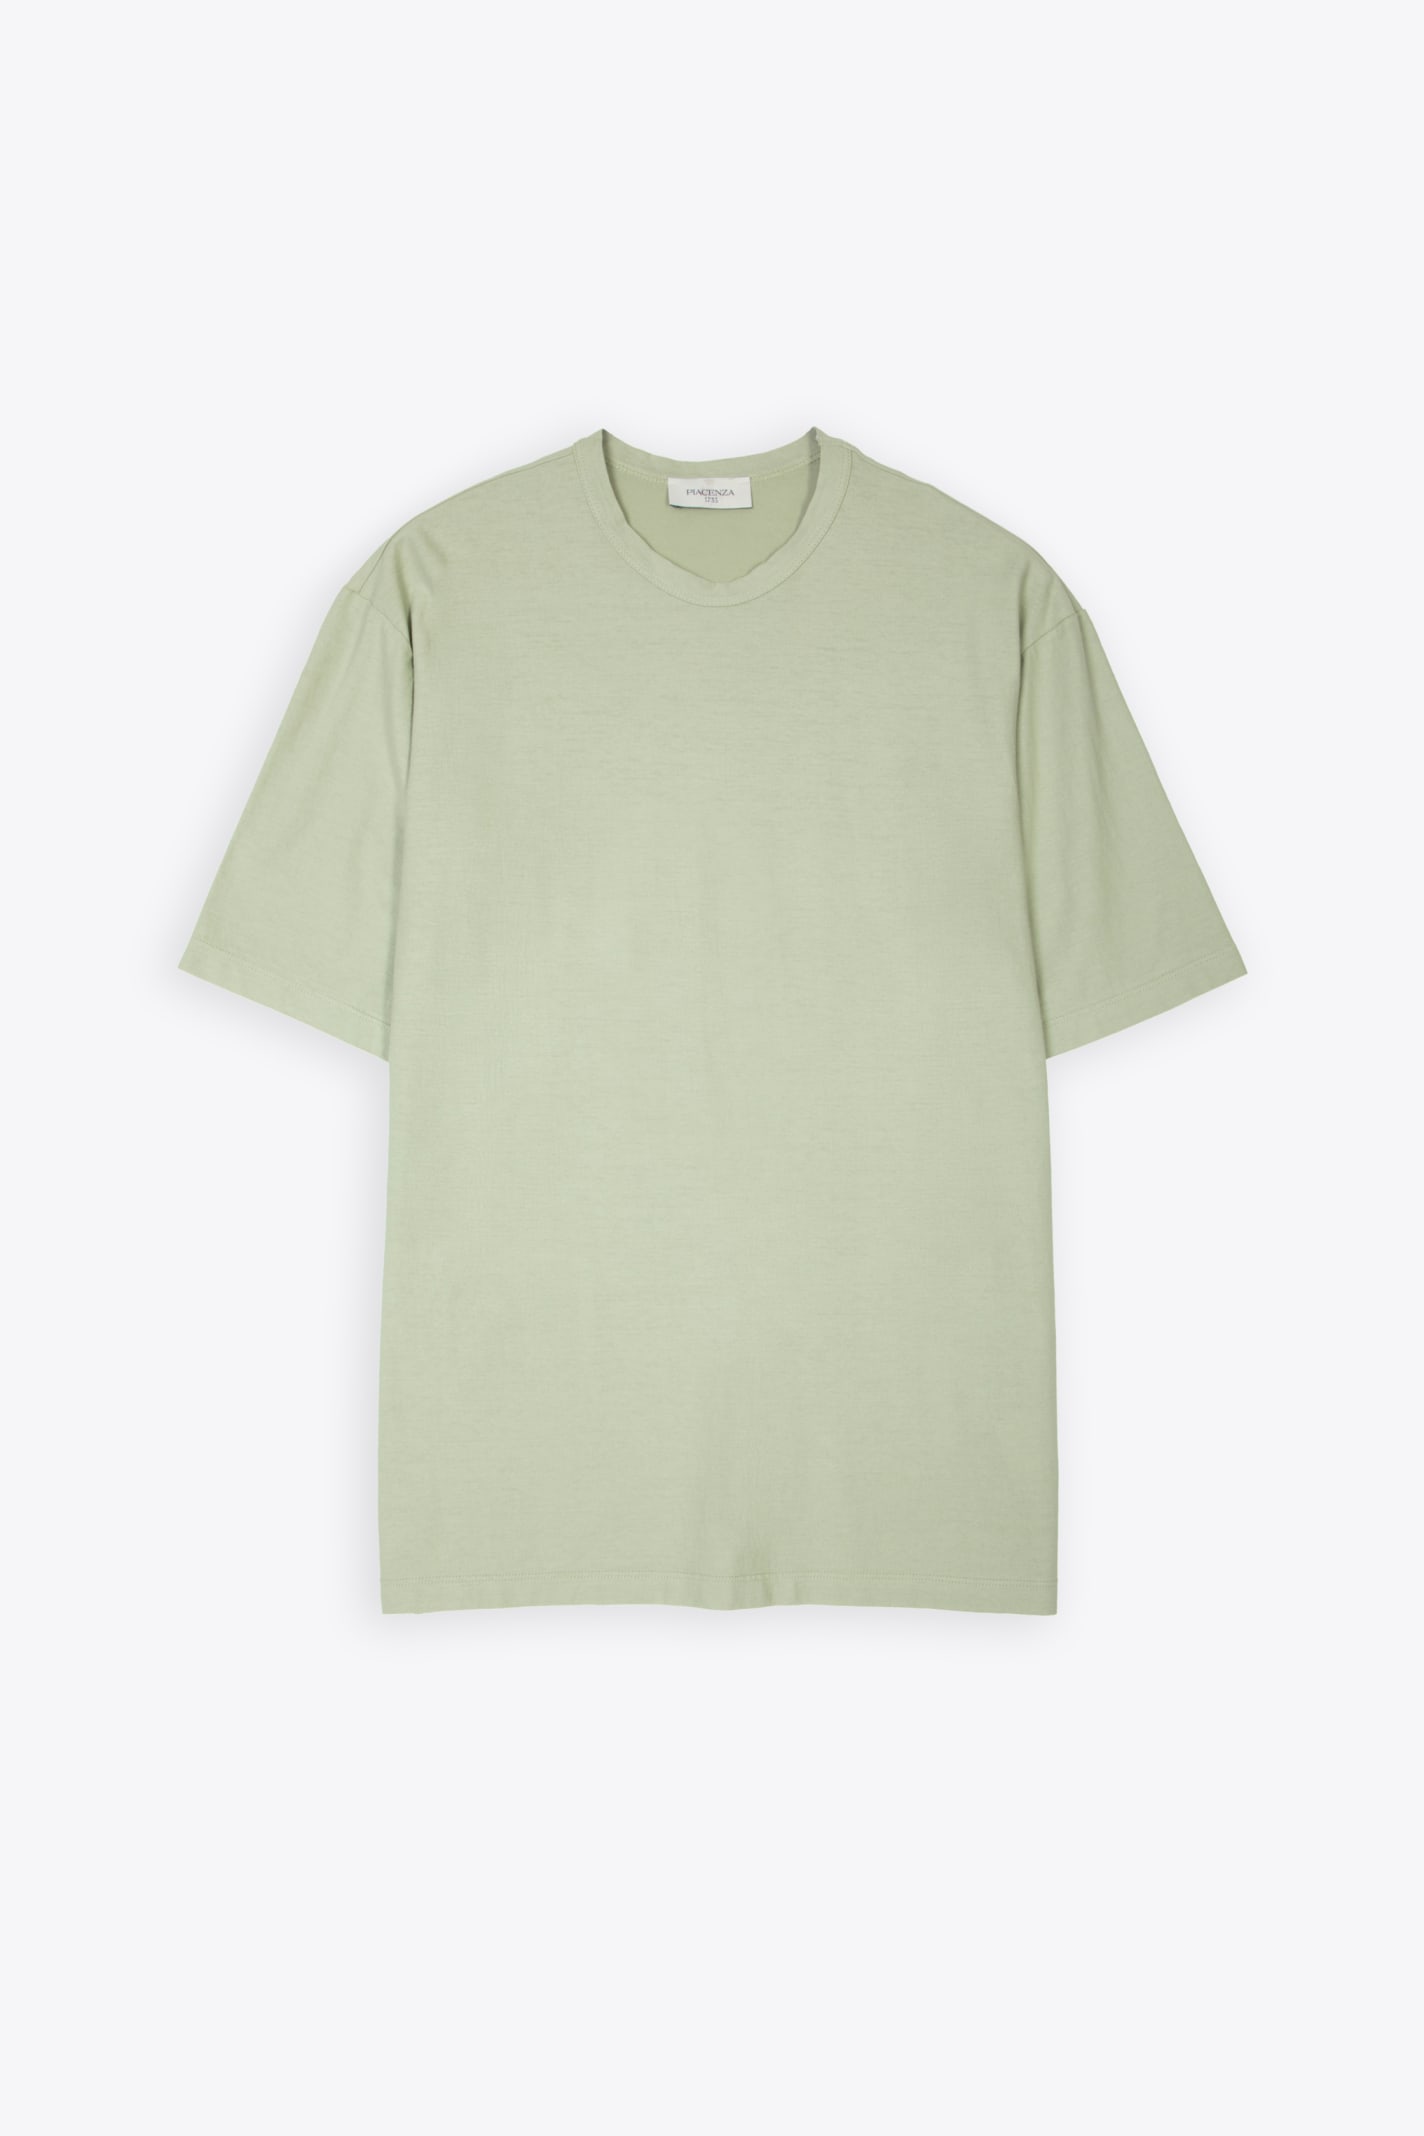 T-shirt Sage green lightweight cotton t-shirt